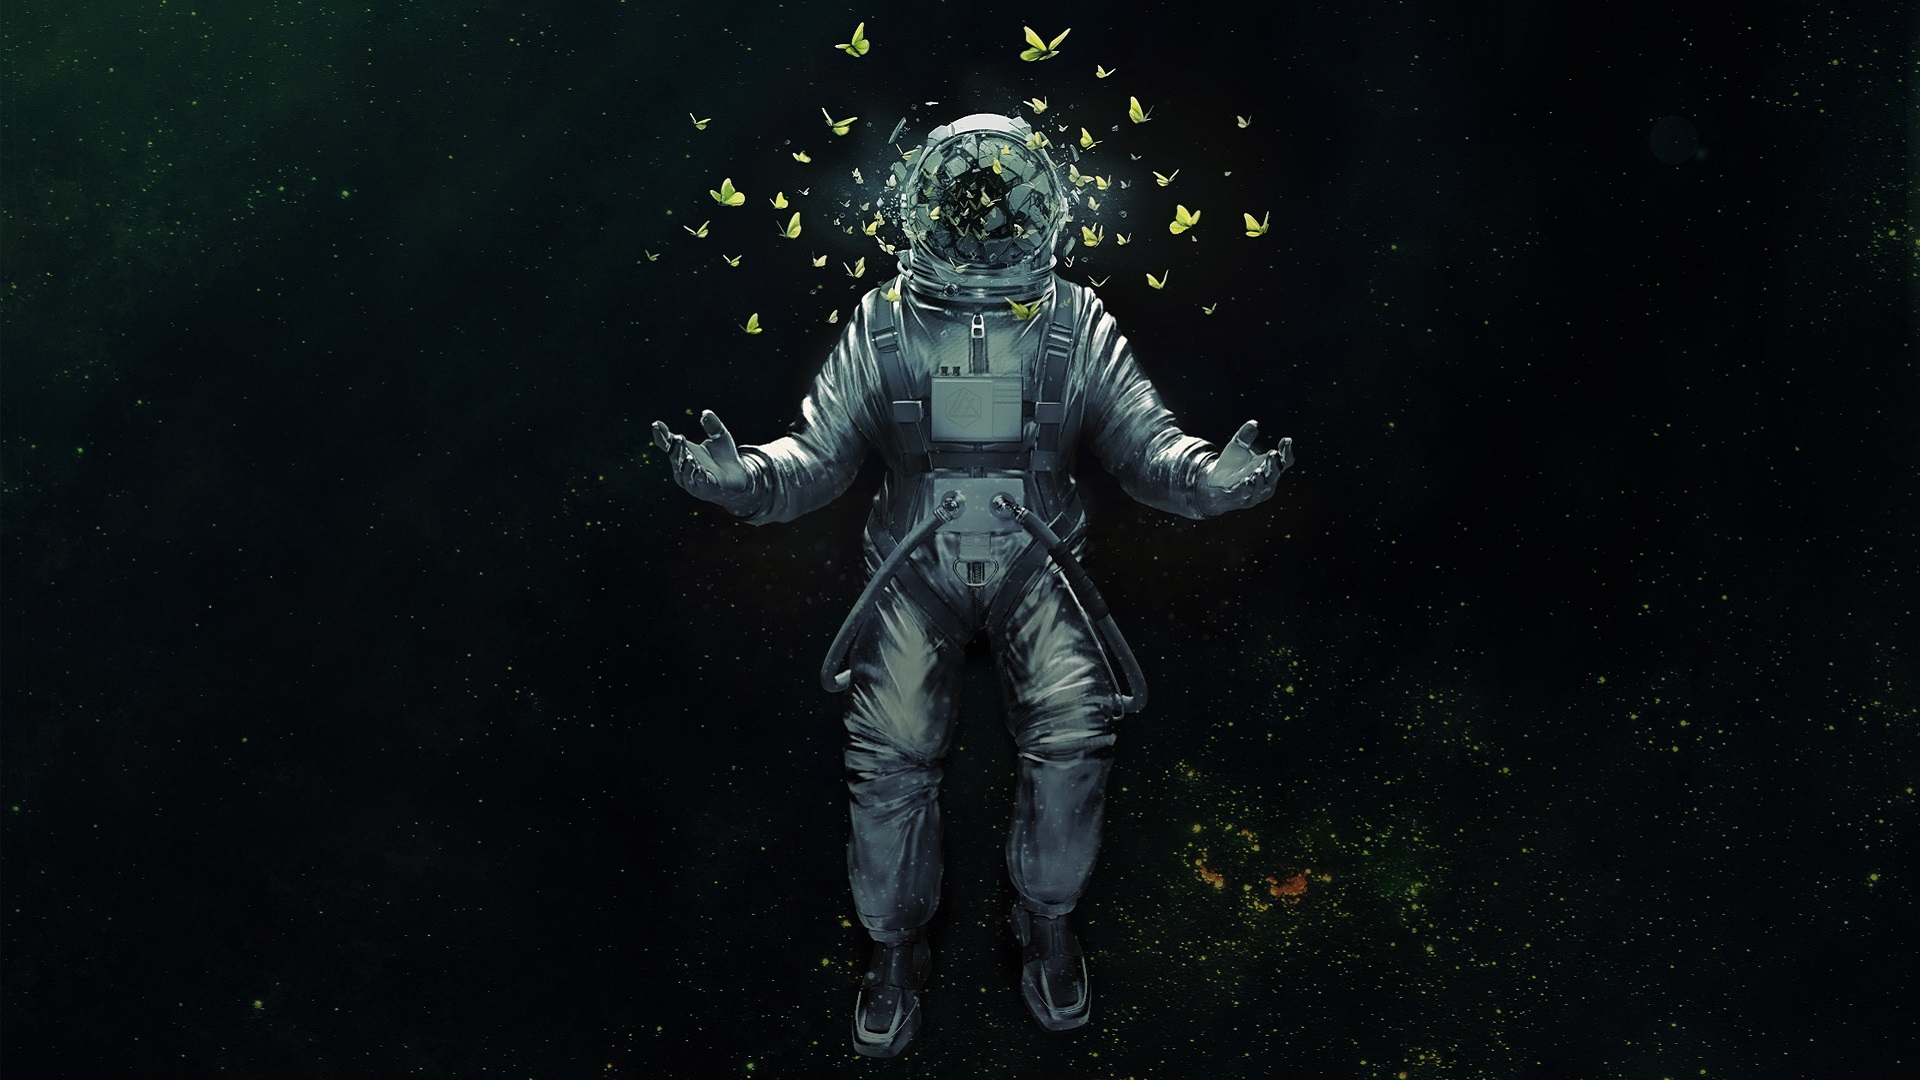 Astronaut Dream83481638 - Astronaut Dream - Dream, Attack, Astronaut